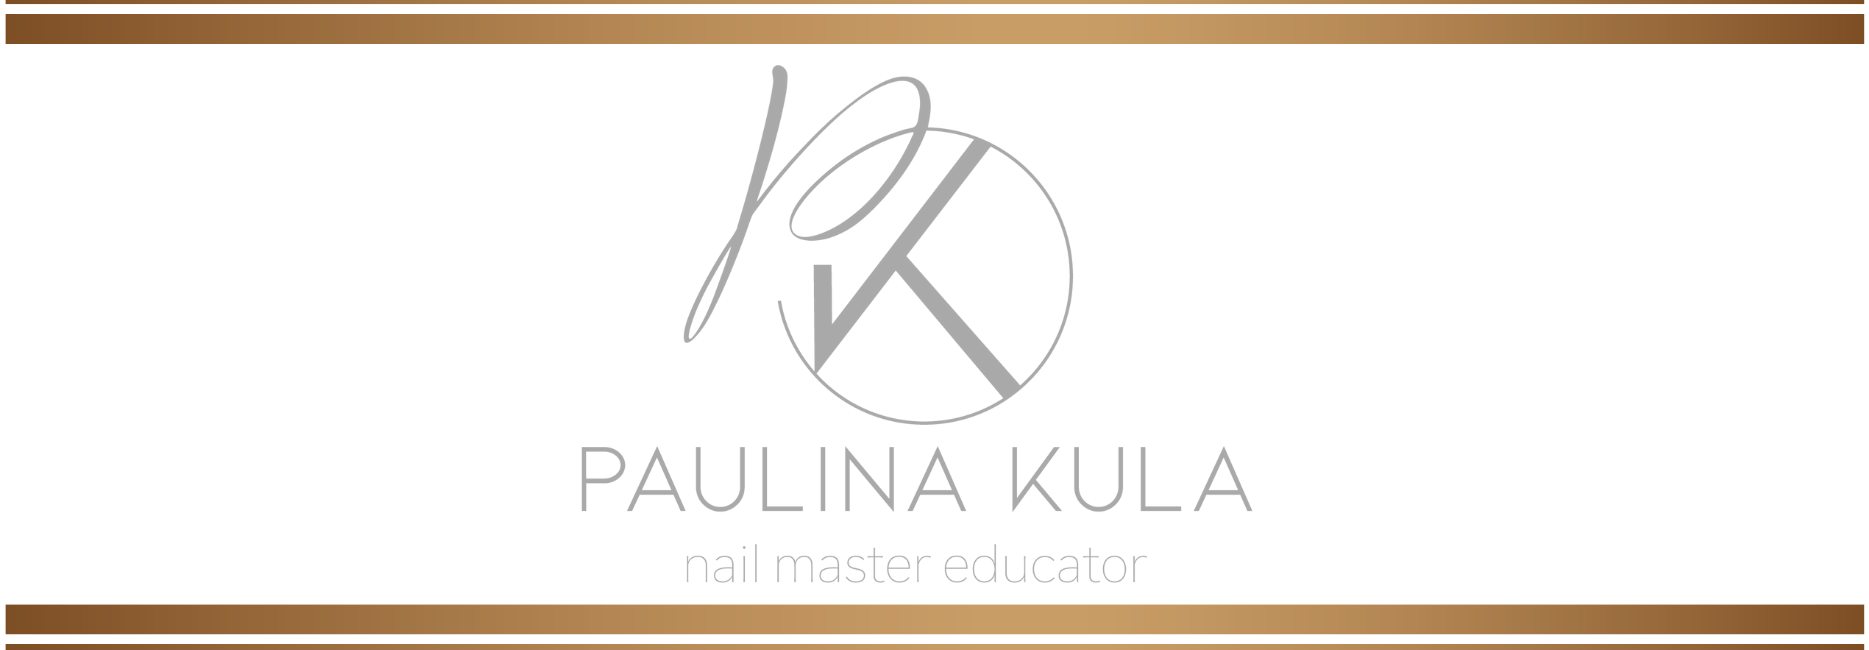 Akademia VIP Instruktor Akademia BMT Paulina Kula Nails